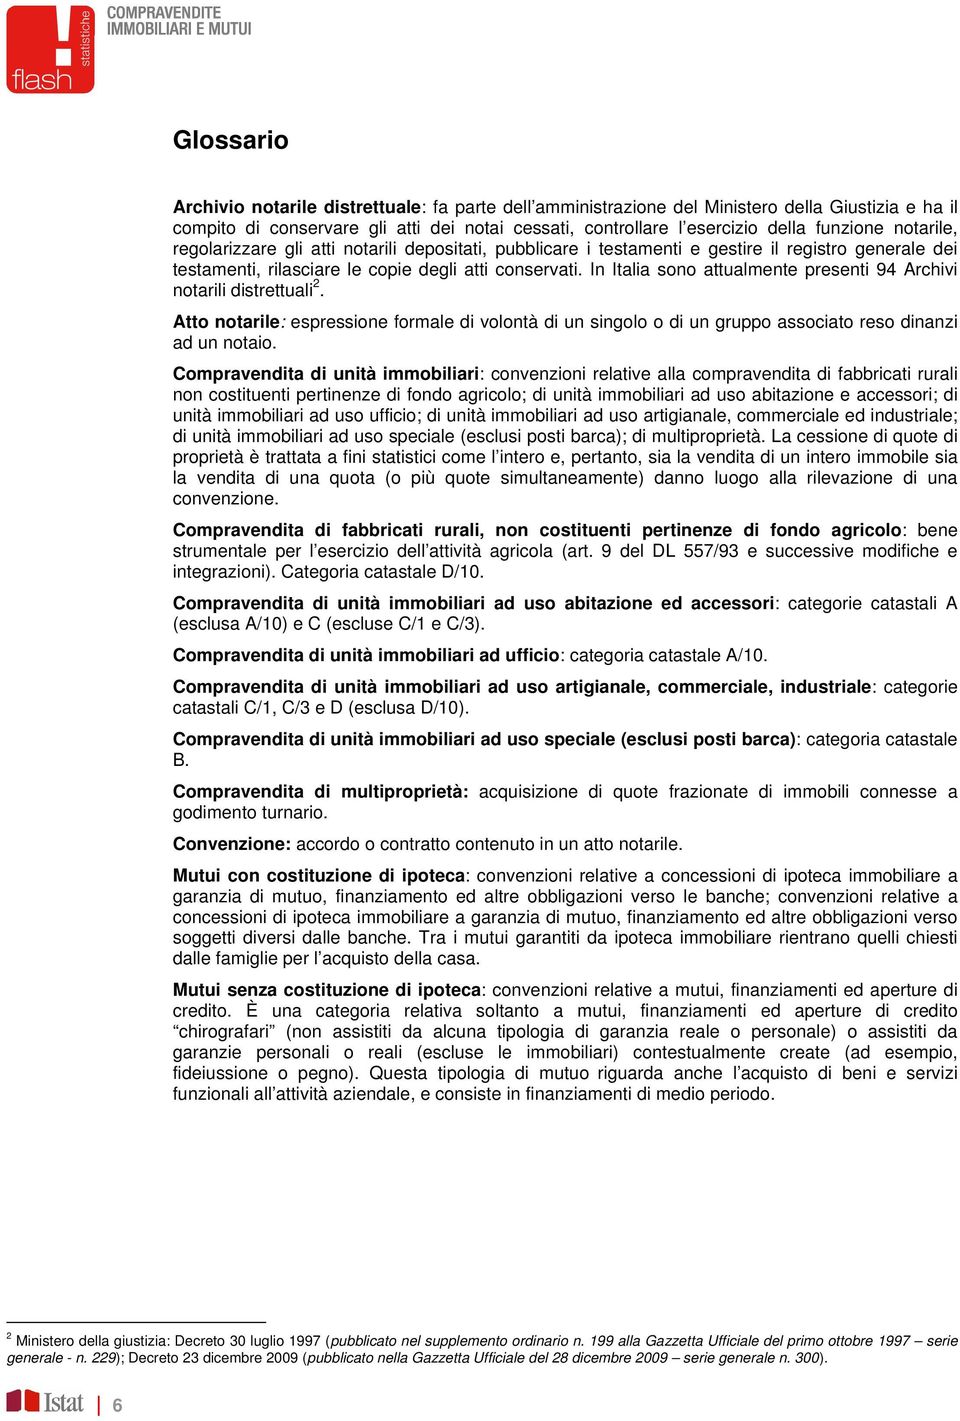 In Italia sono attualmente presenti 94 Archivi notarili distrettuali 2. Atto notarile: espressione formale di volontà di un singolo o di un gruppo associato reso dinanzi ad un notaio.